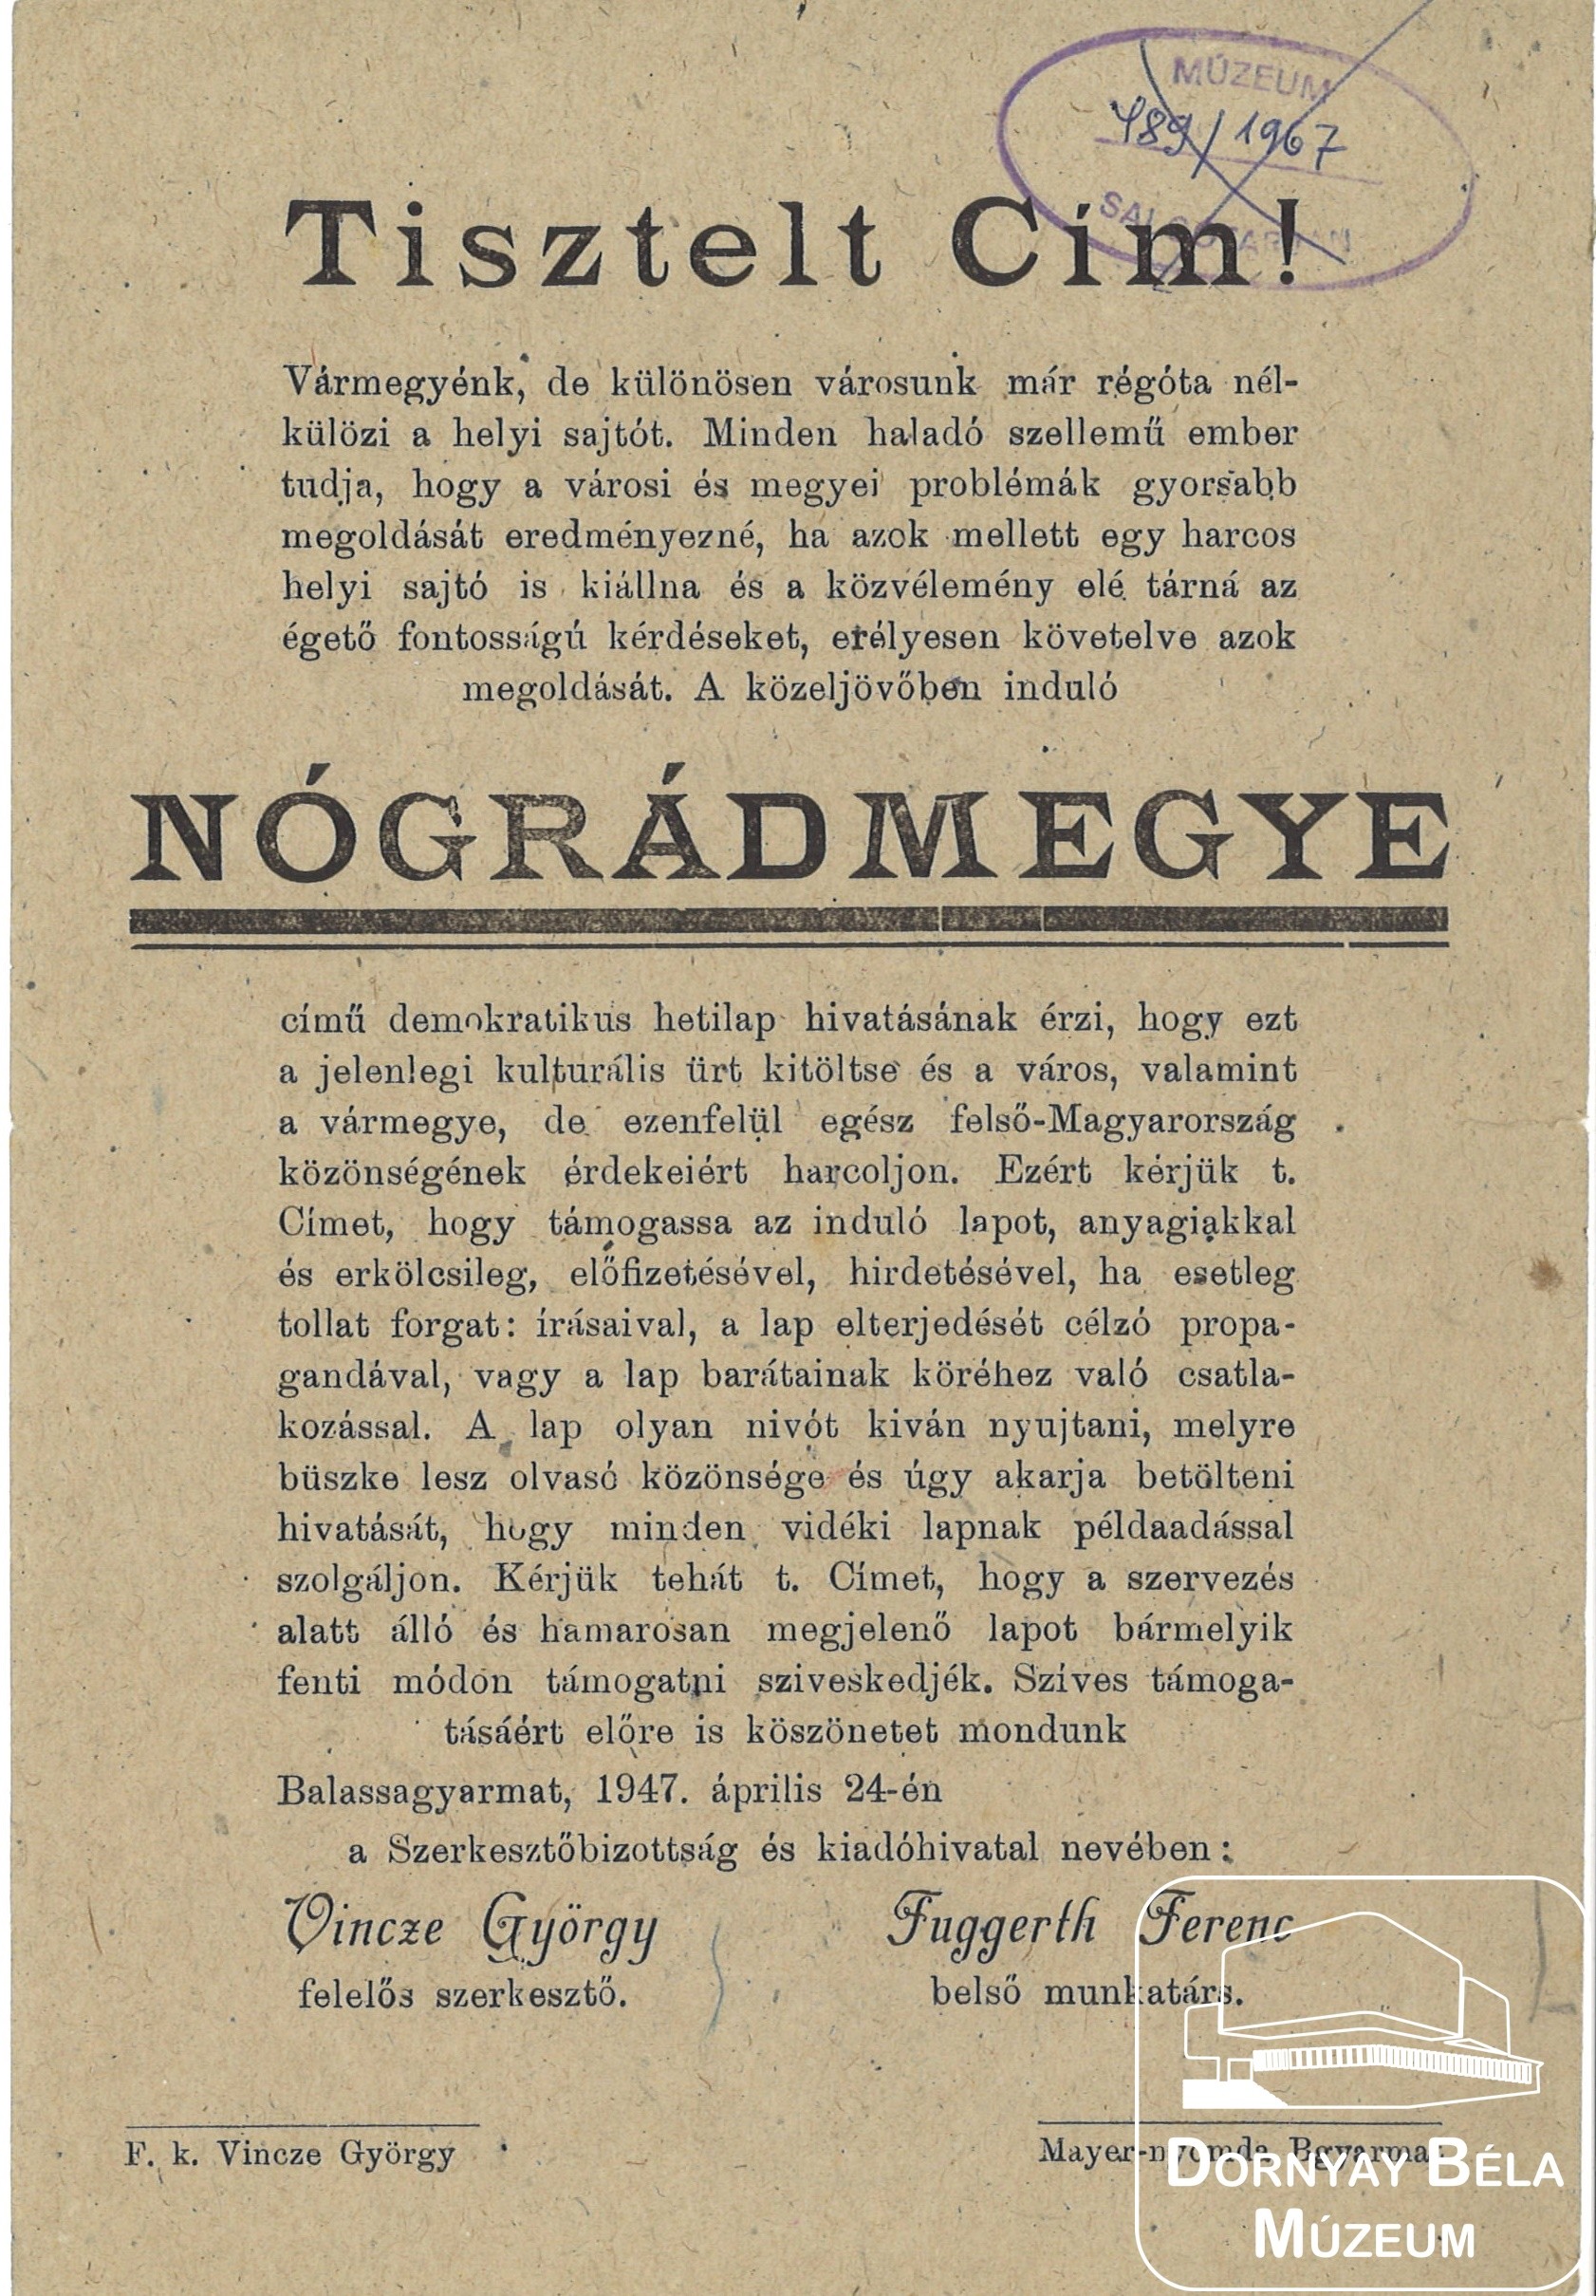 Nógrád megye c. demokratikus hetilap beindulása. (Dornyay Béla Múzeum, Salgótarján CC BY-NC-SA)